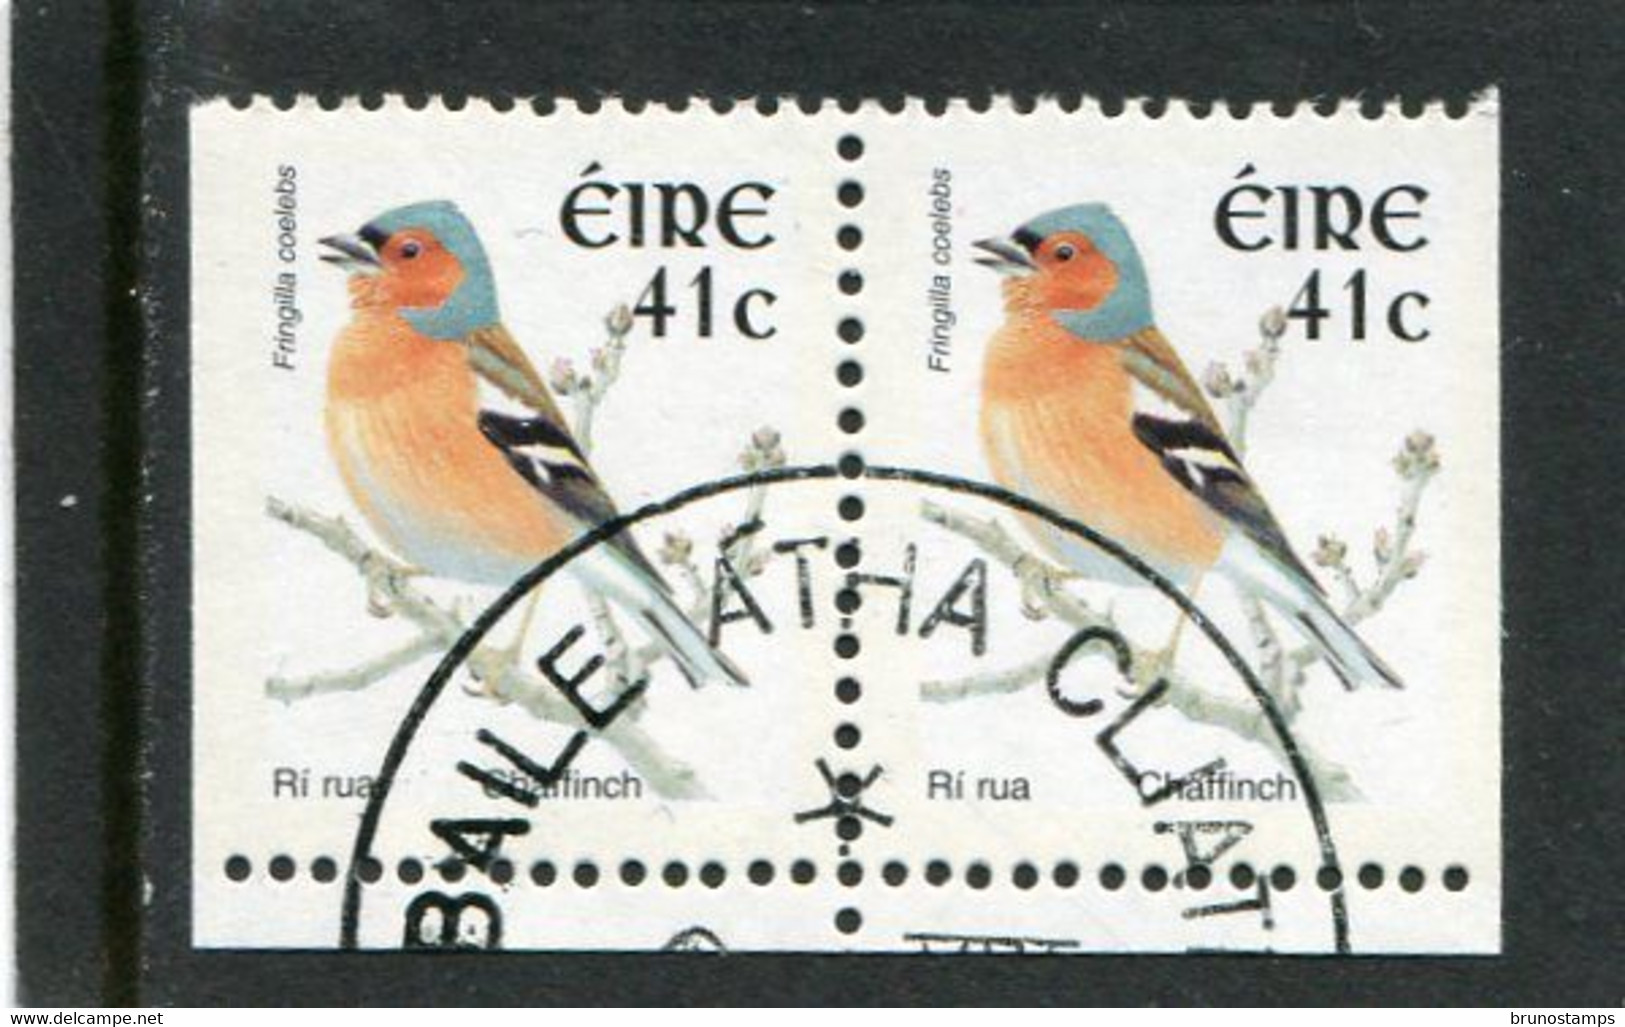 IRELAND/EIRE - 2002  41c  BIRDS  SMALLER SIZE  PAIR  EX BOOKLET  FINE USED - Gebraucht